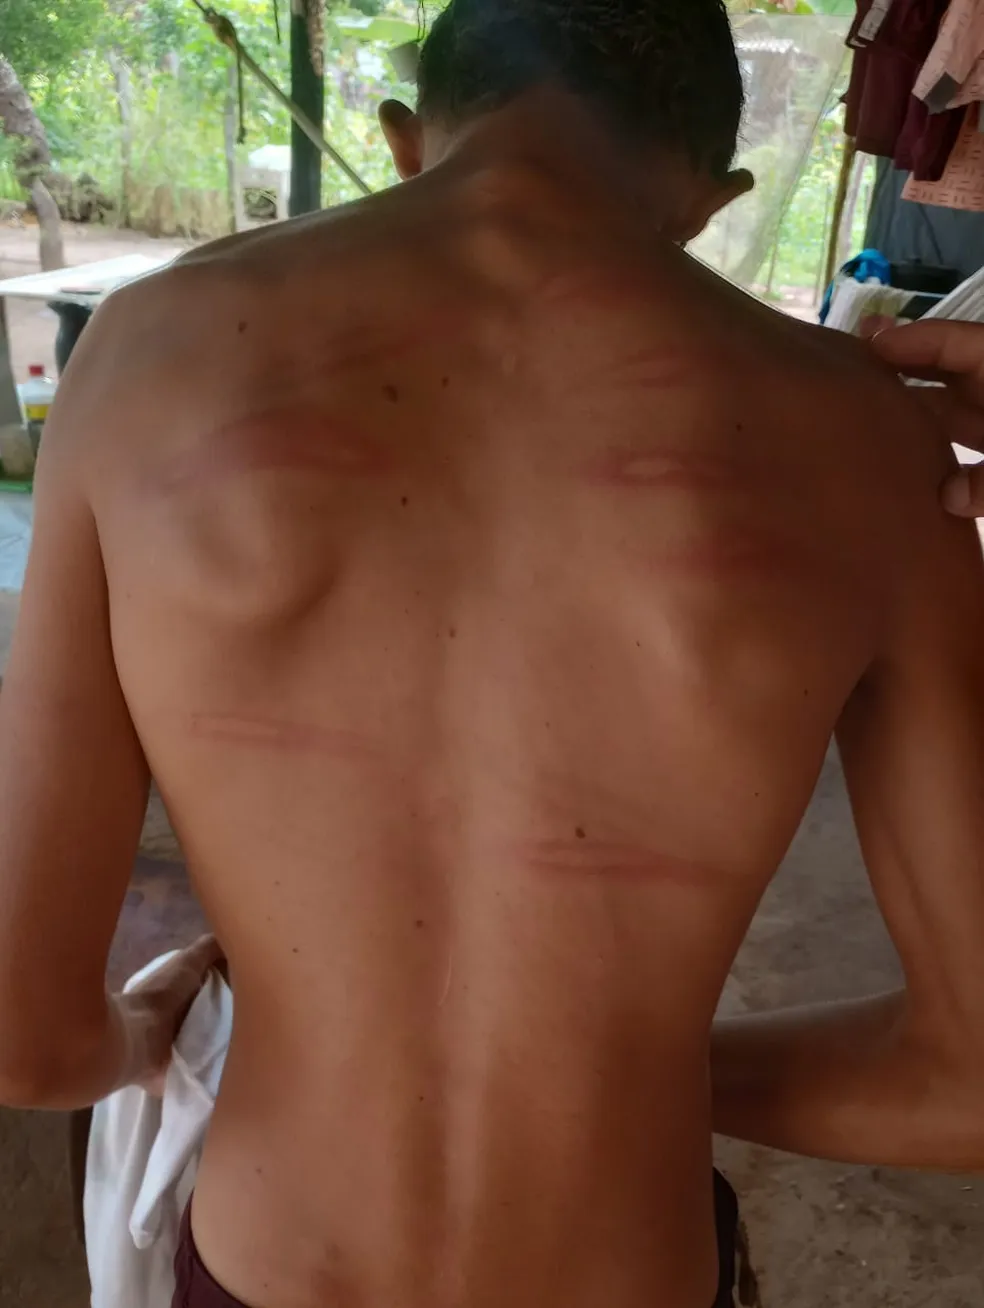 Marcas das agressões ficaram no corpo do adolescente. — Foto: Divulgação / Polícia Civil